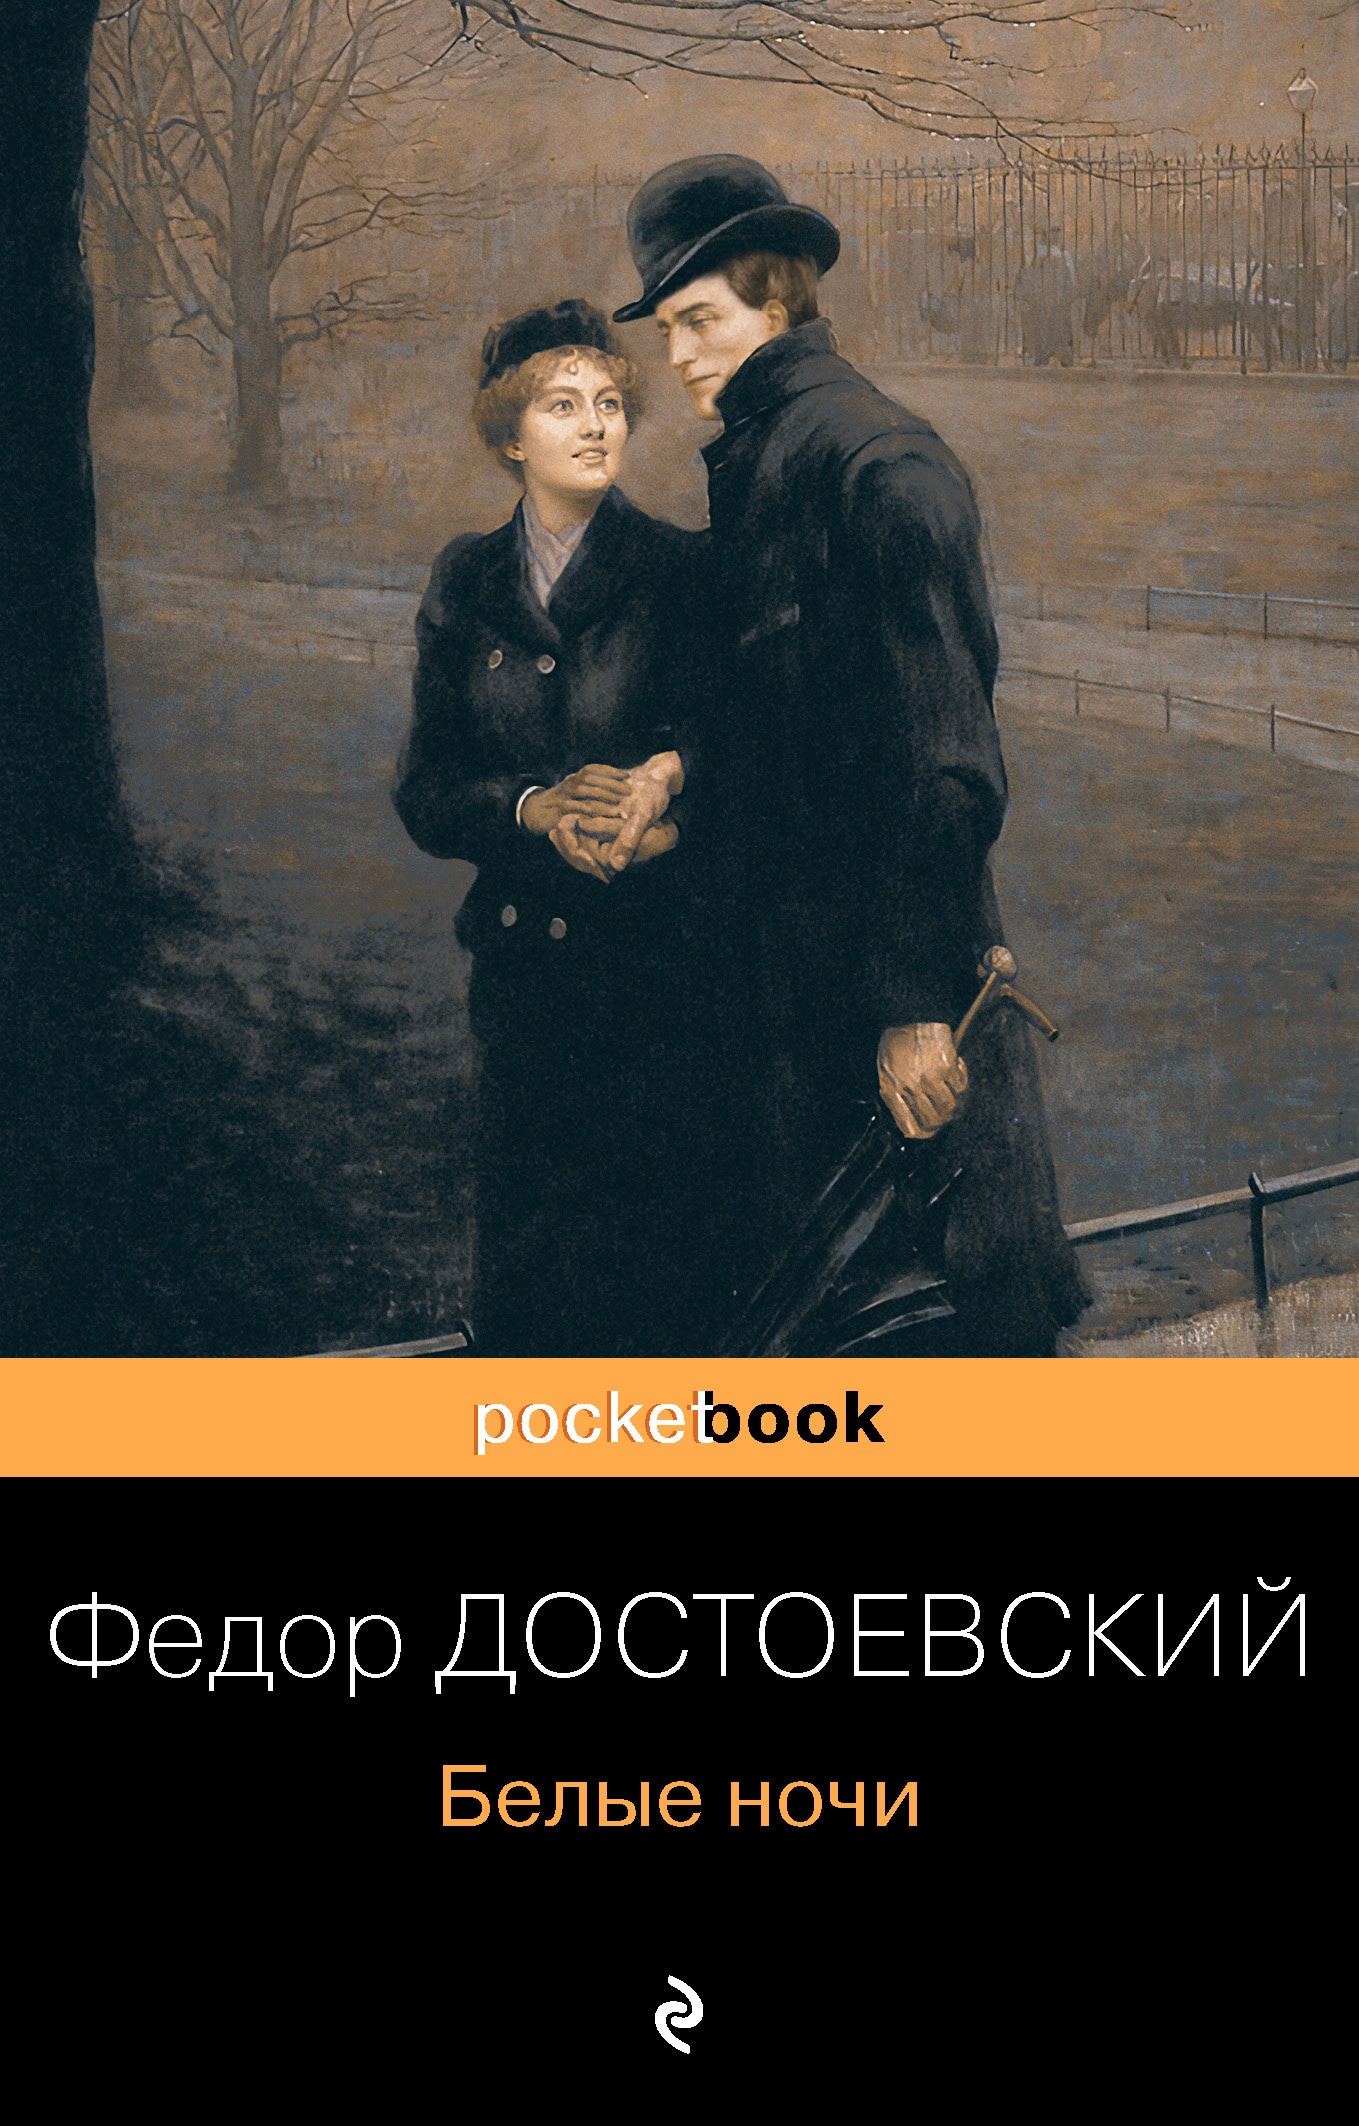 Книга «Белые ночи» Федор Достоевский — 7 декабря 2020 г.